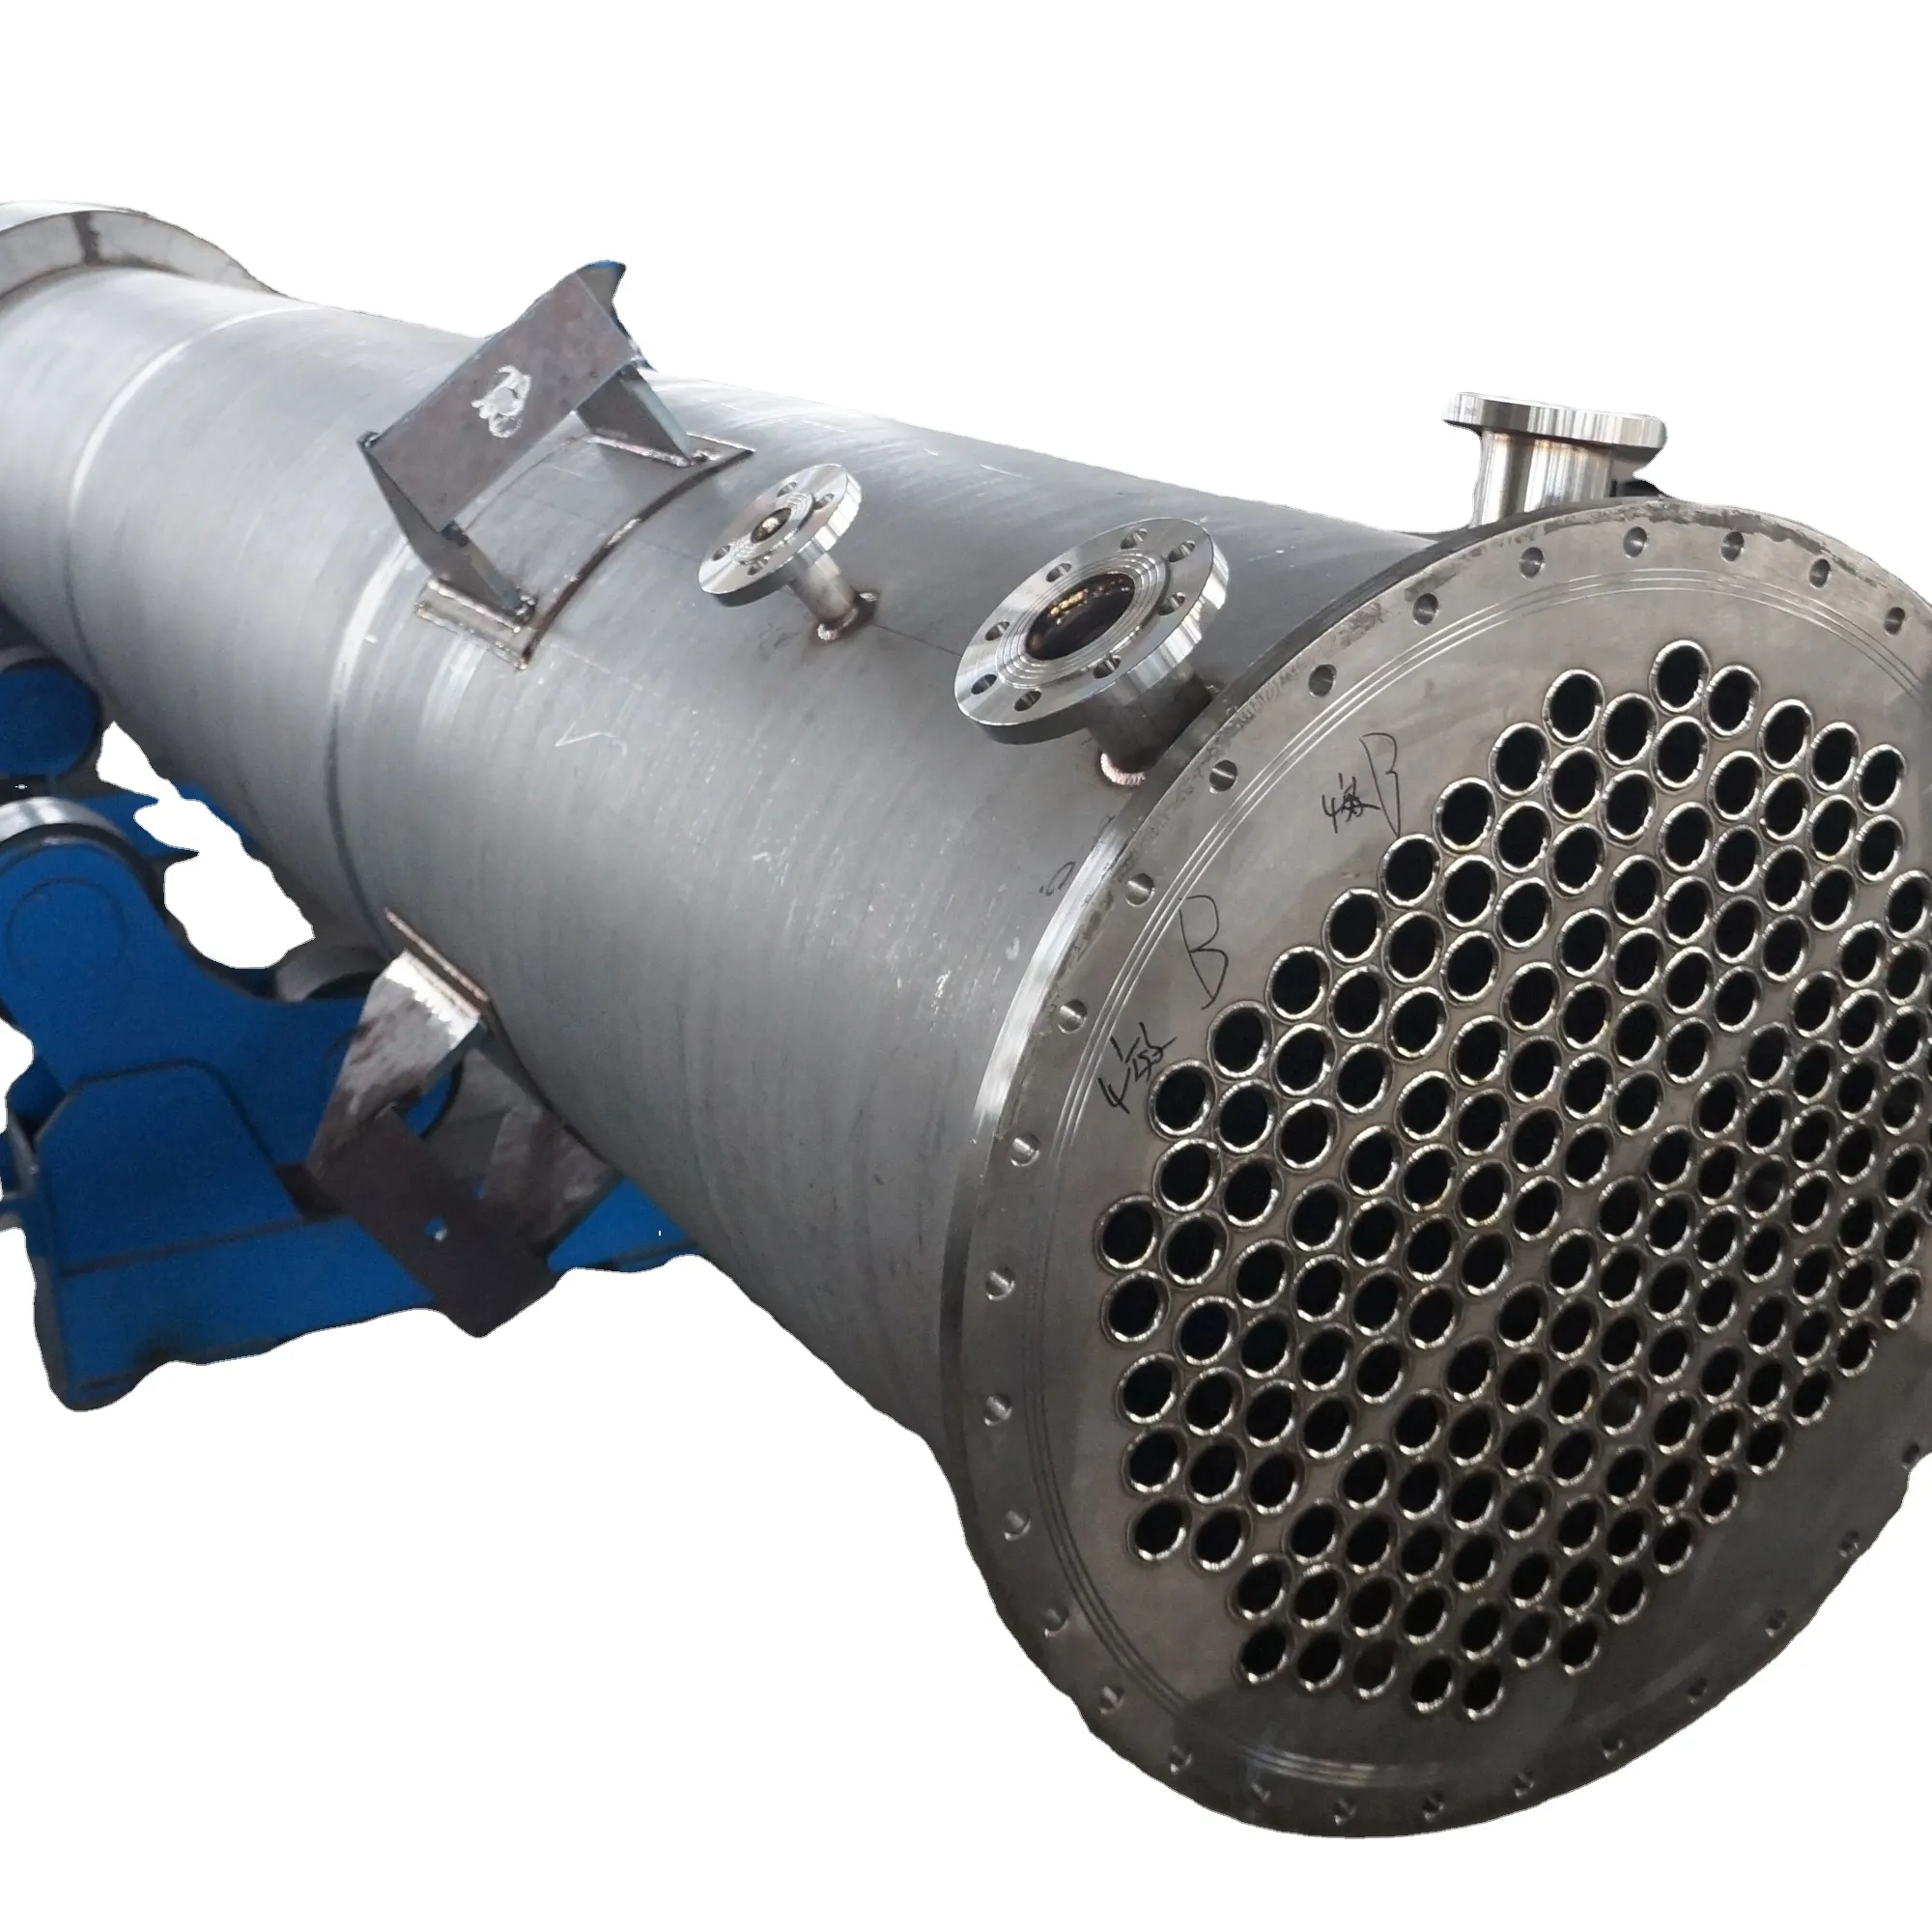 Scambiatore di calore a fascio tubiero tubo in scambiatore di calore tubolare scambiatore di calore tubolare